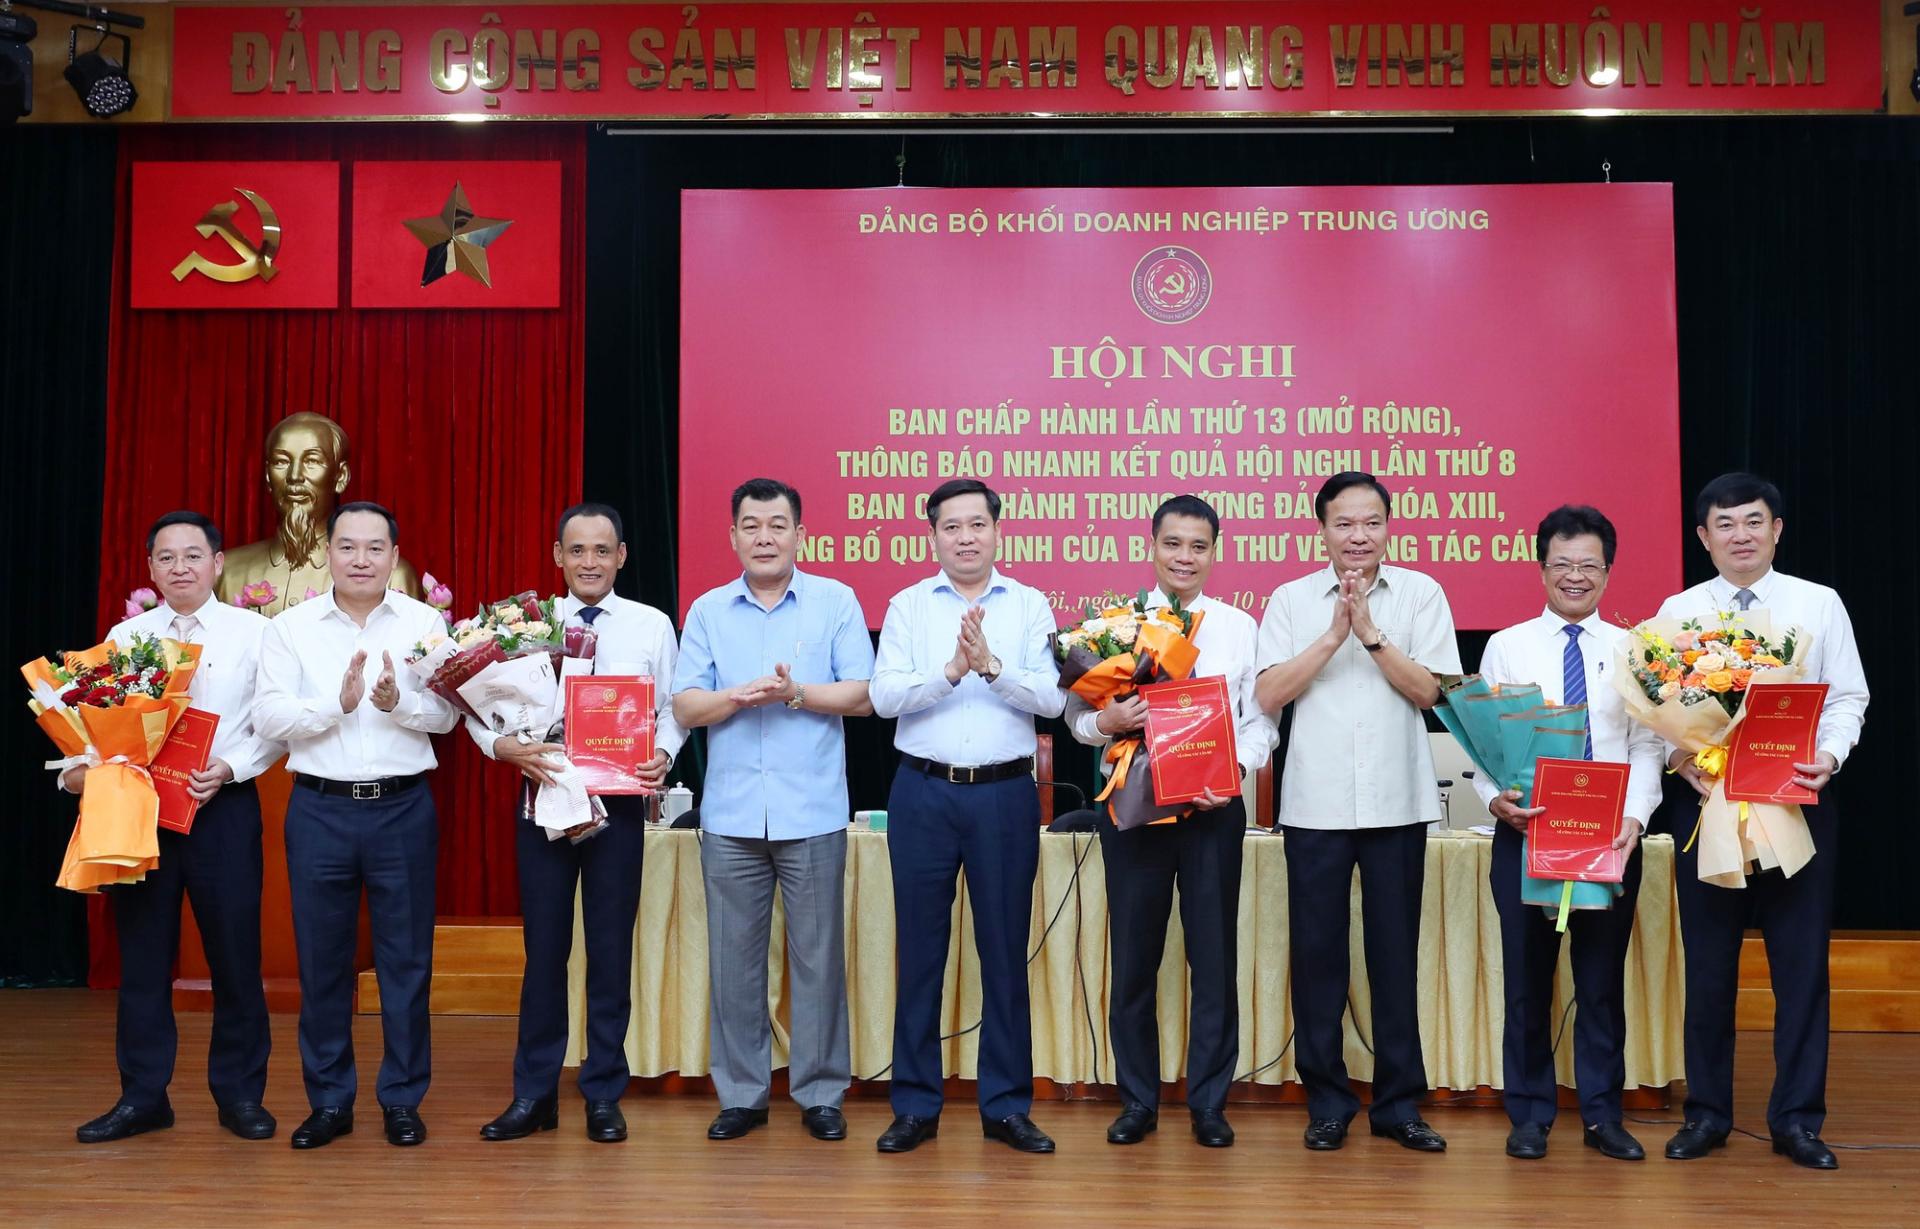 Thường trực Đảng uỷ Khối Doanh nghiệp Trung ương trao Quyết định và tặng hoa cho các đồng chí được chỉ định tham gia Ban Chấp hành Đảng bộ Khối Doanh nghiệp Trung ương, nhiệm kỳ 2020 - 2025.